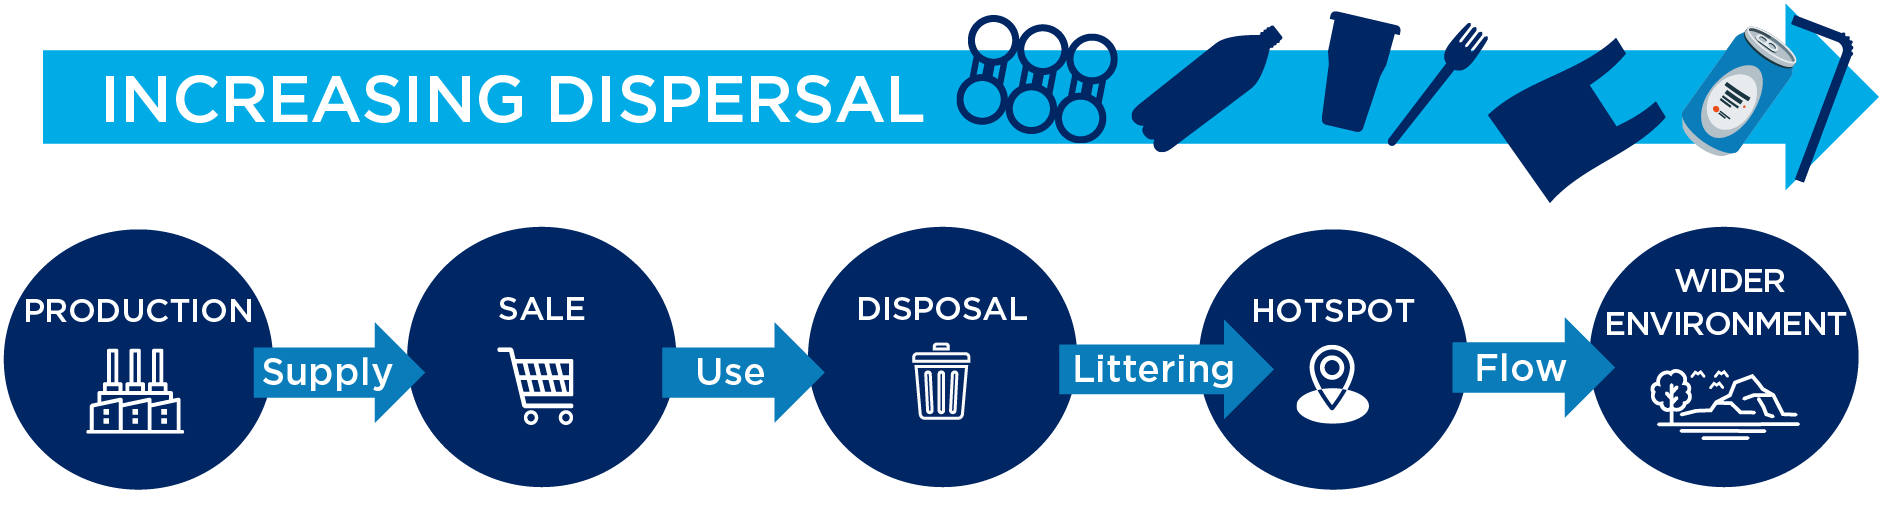 Figure 1: Litter dispersing along the litter journey